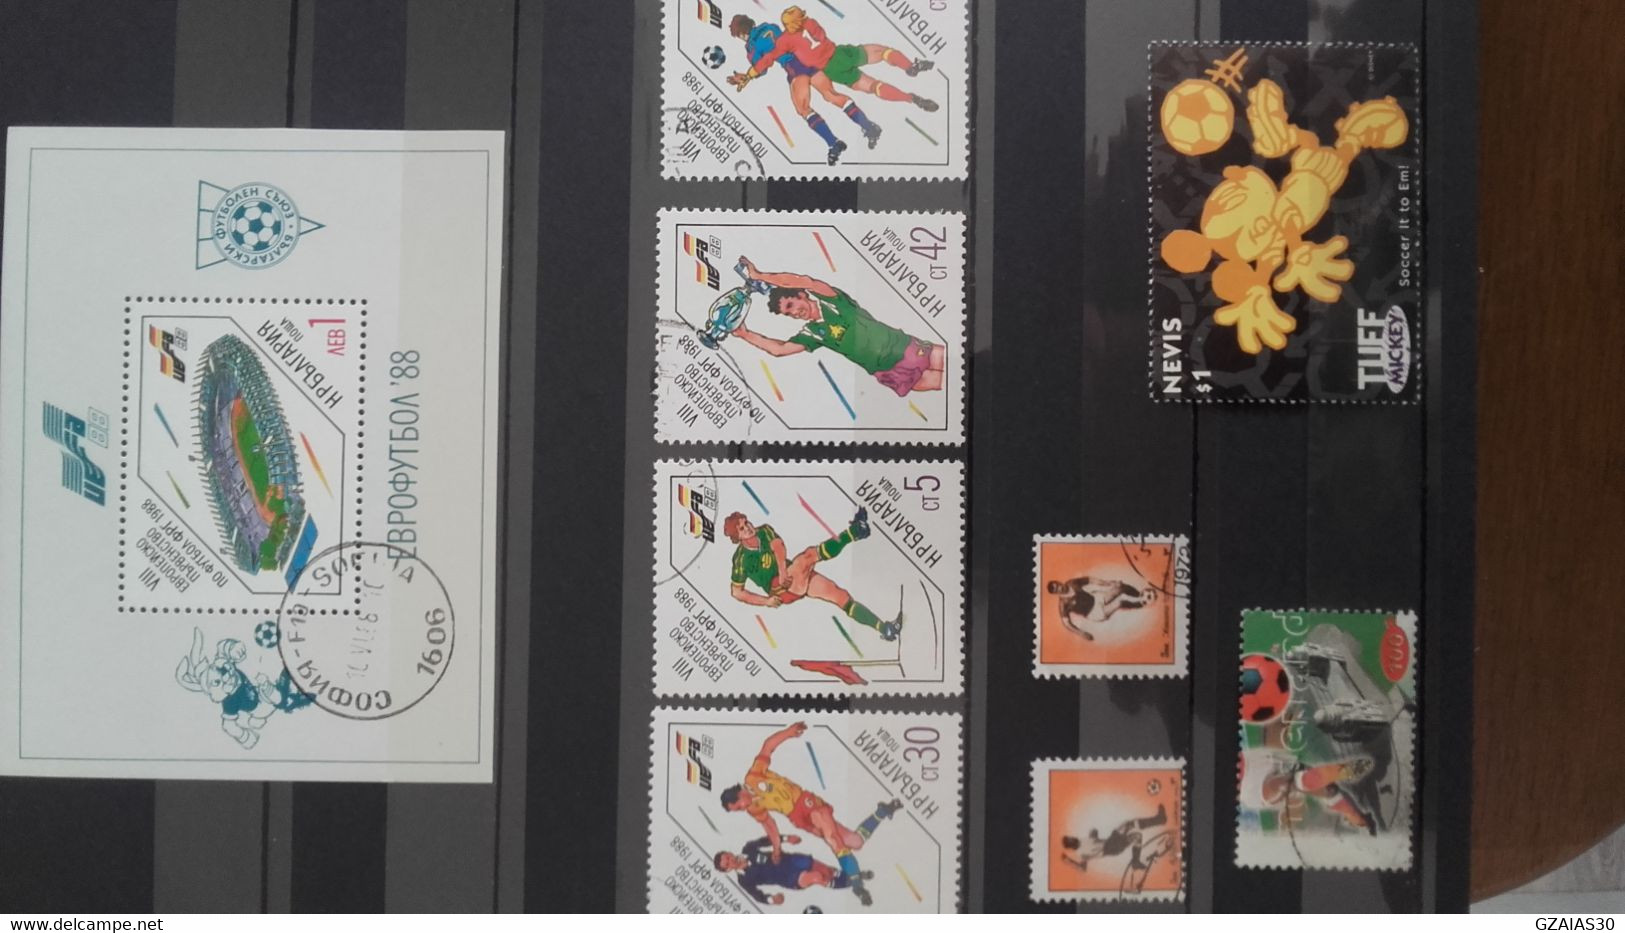 monde lot de 1000 timbres sur le thème du football